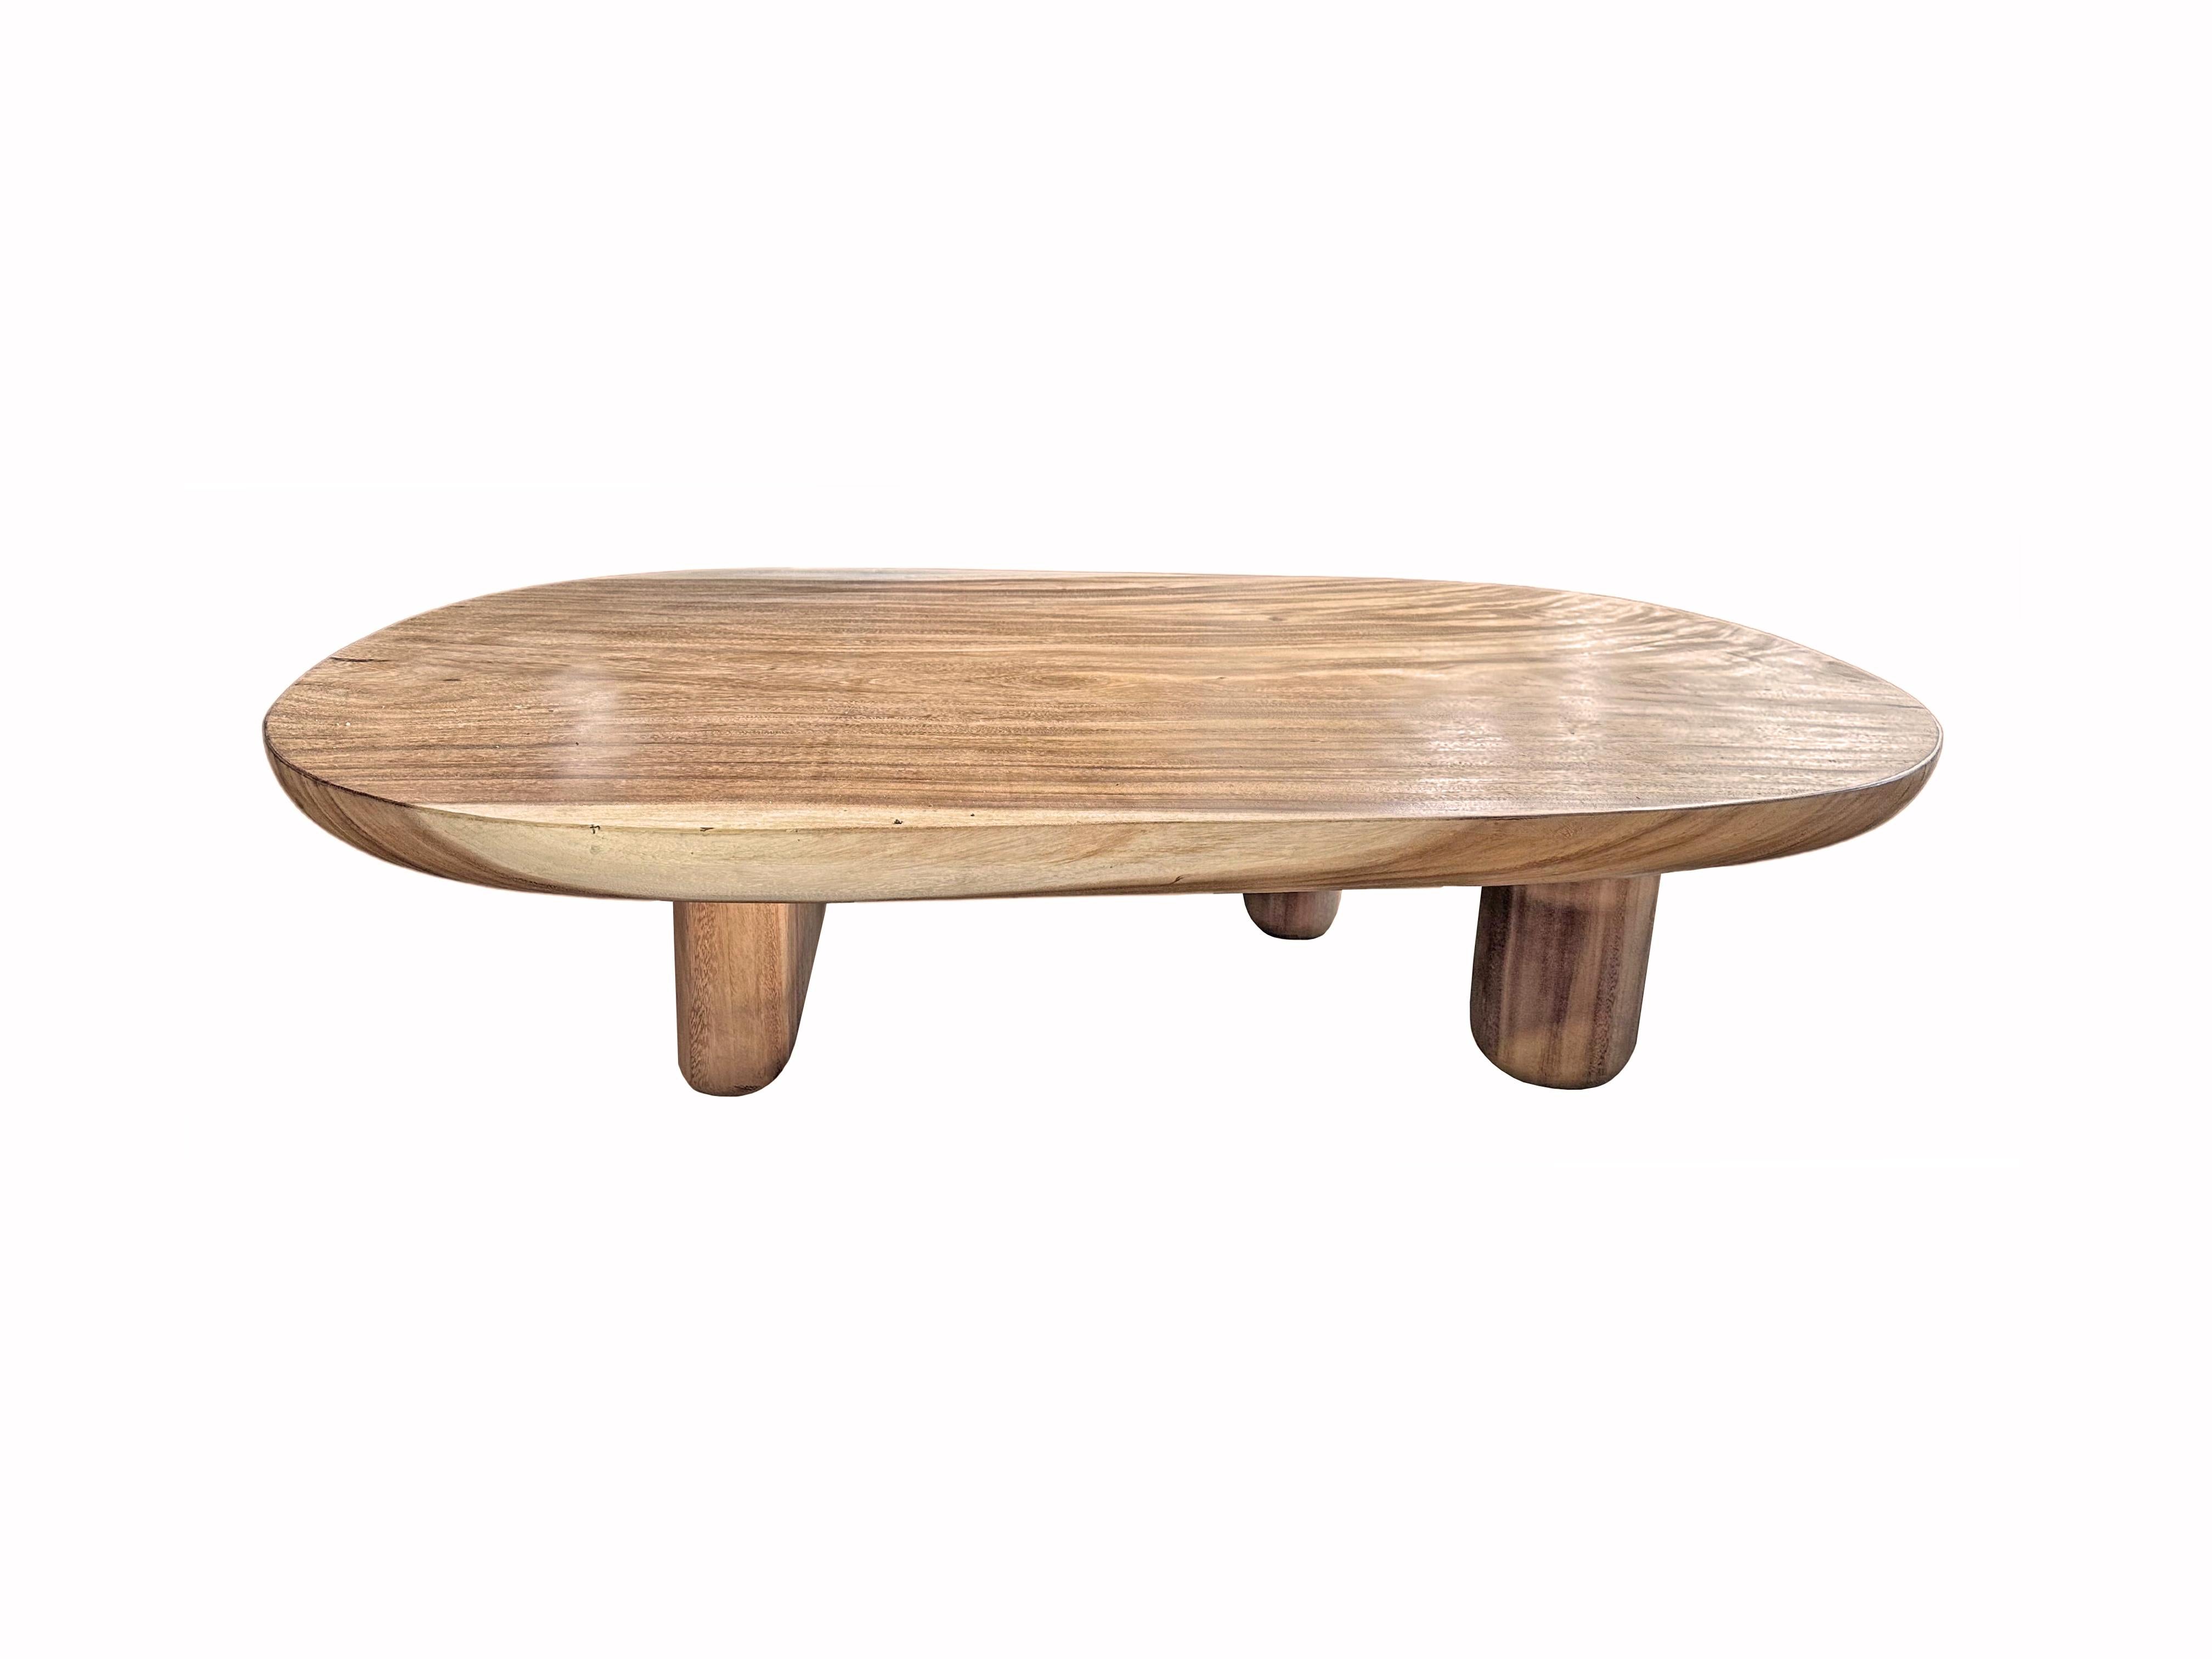 Cette table en bois de manguier massif présente de magnifiques textures et nuances de bois. Ses tons neutres en font le complément idéal pour apporter de la chaleur à n'importe quel espace. Une pièce sculpturale et polyvalente. Le mélange de lignes